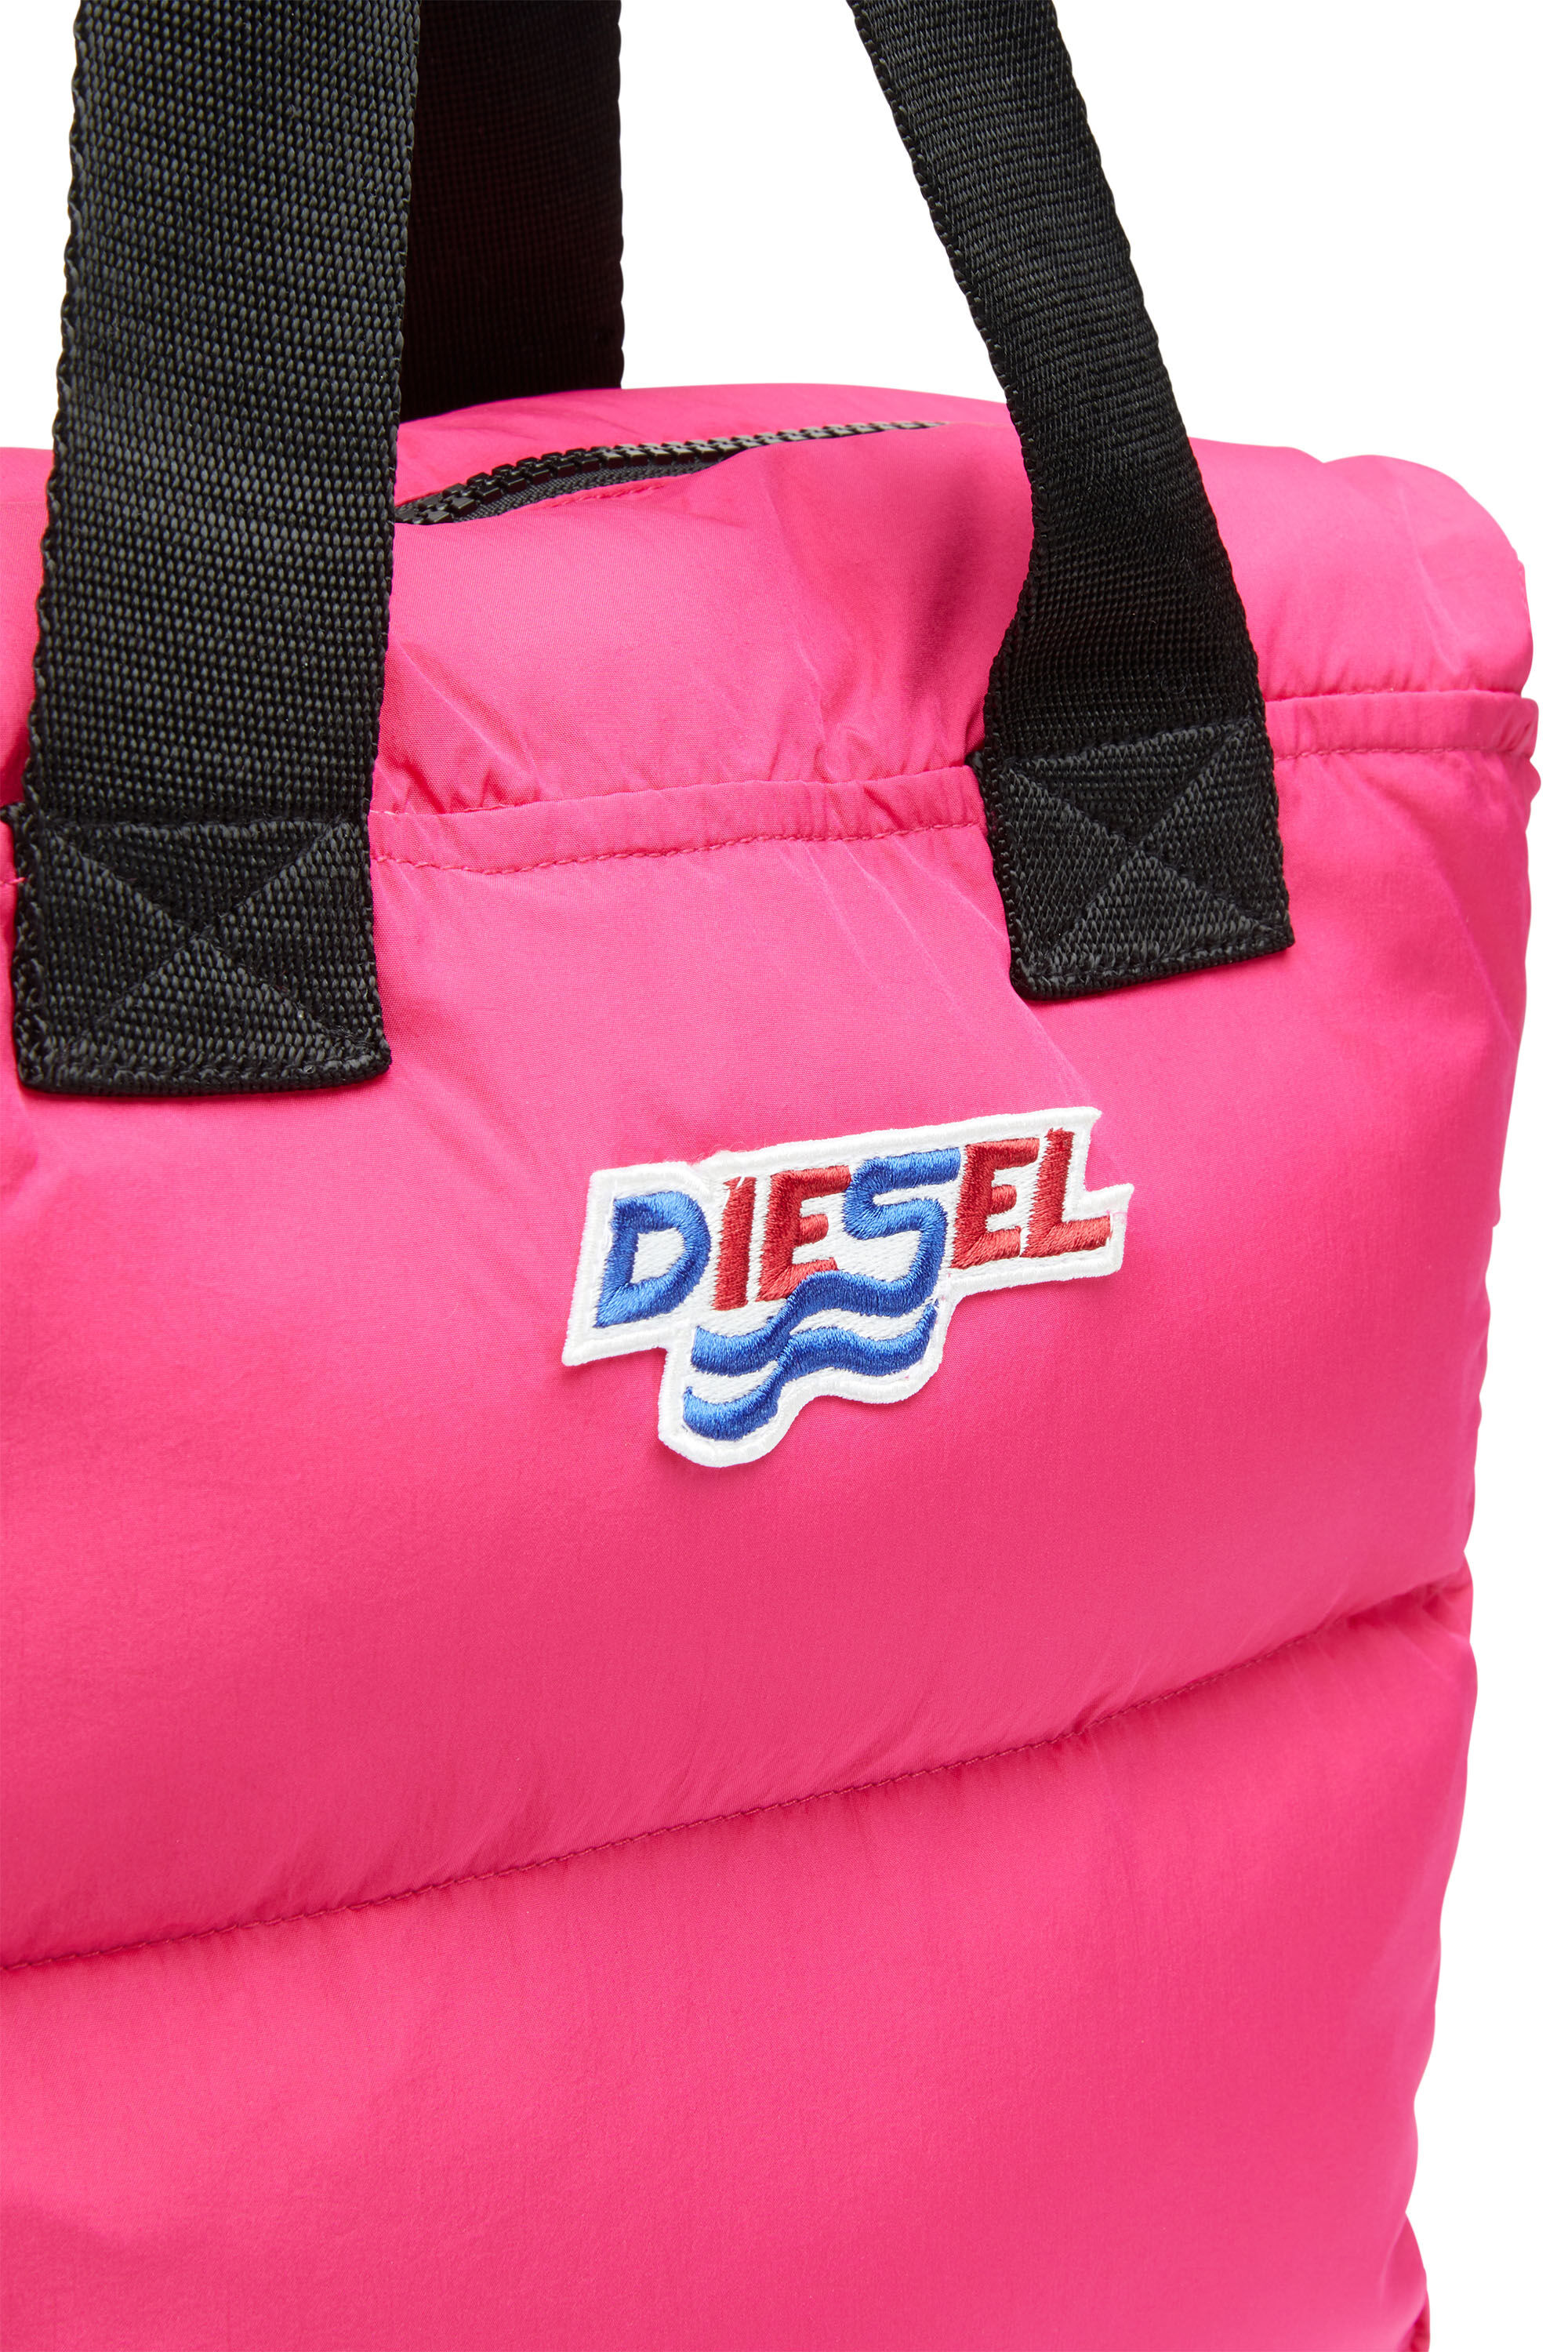 Diesel - WIRO, Rosa - Image 5